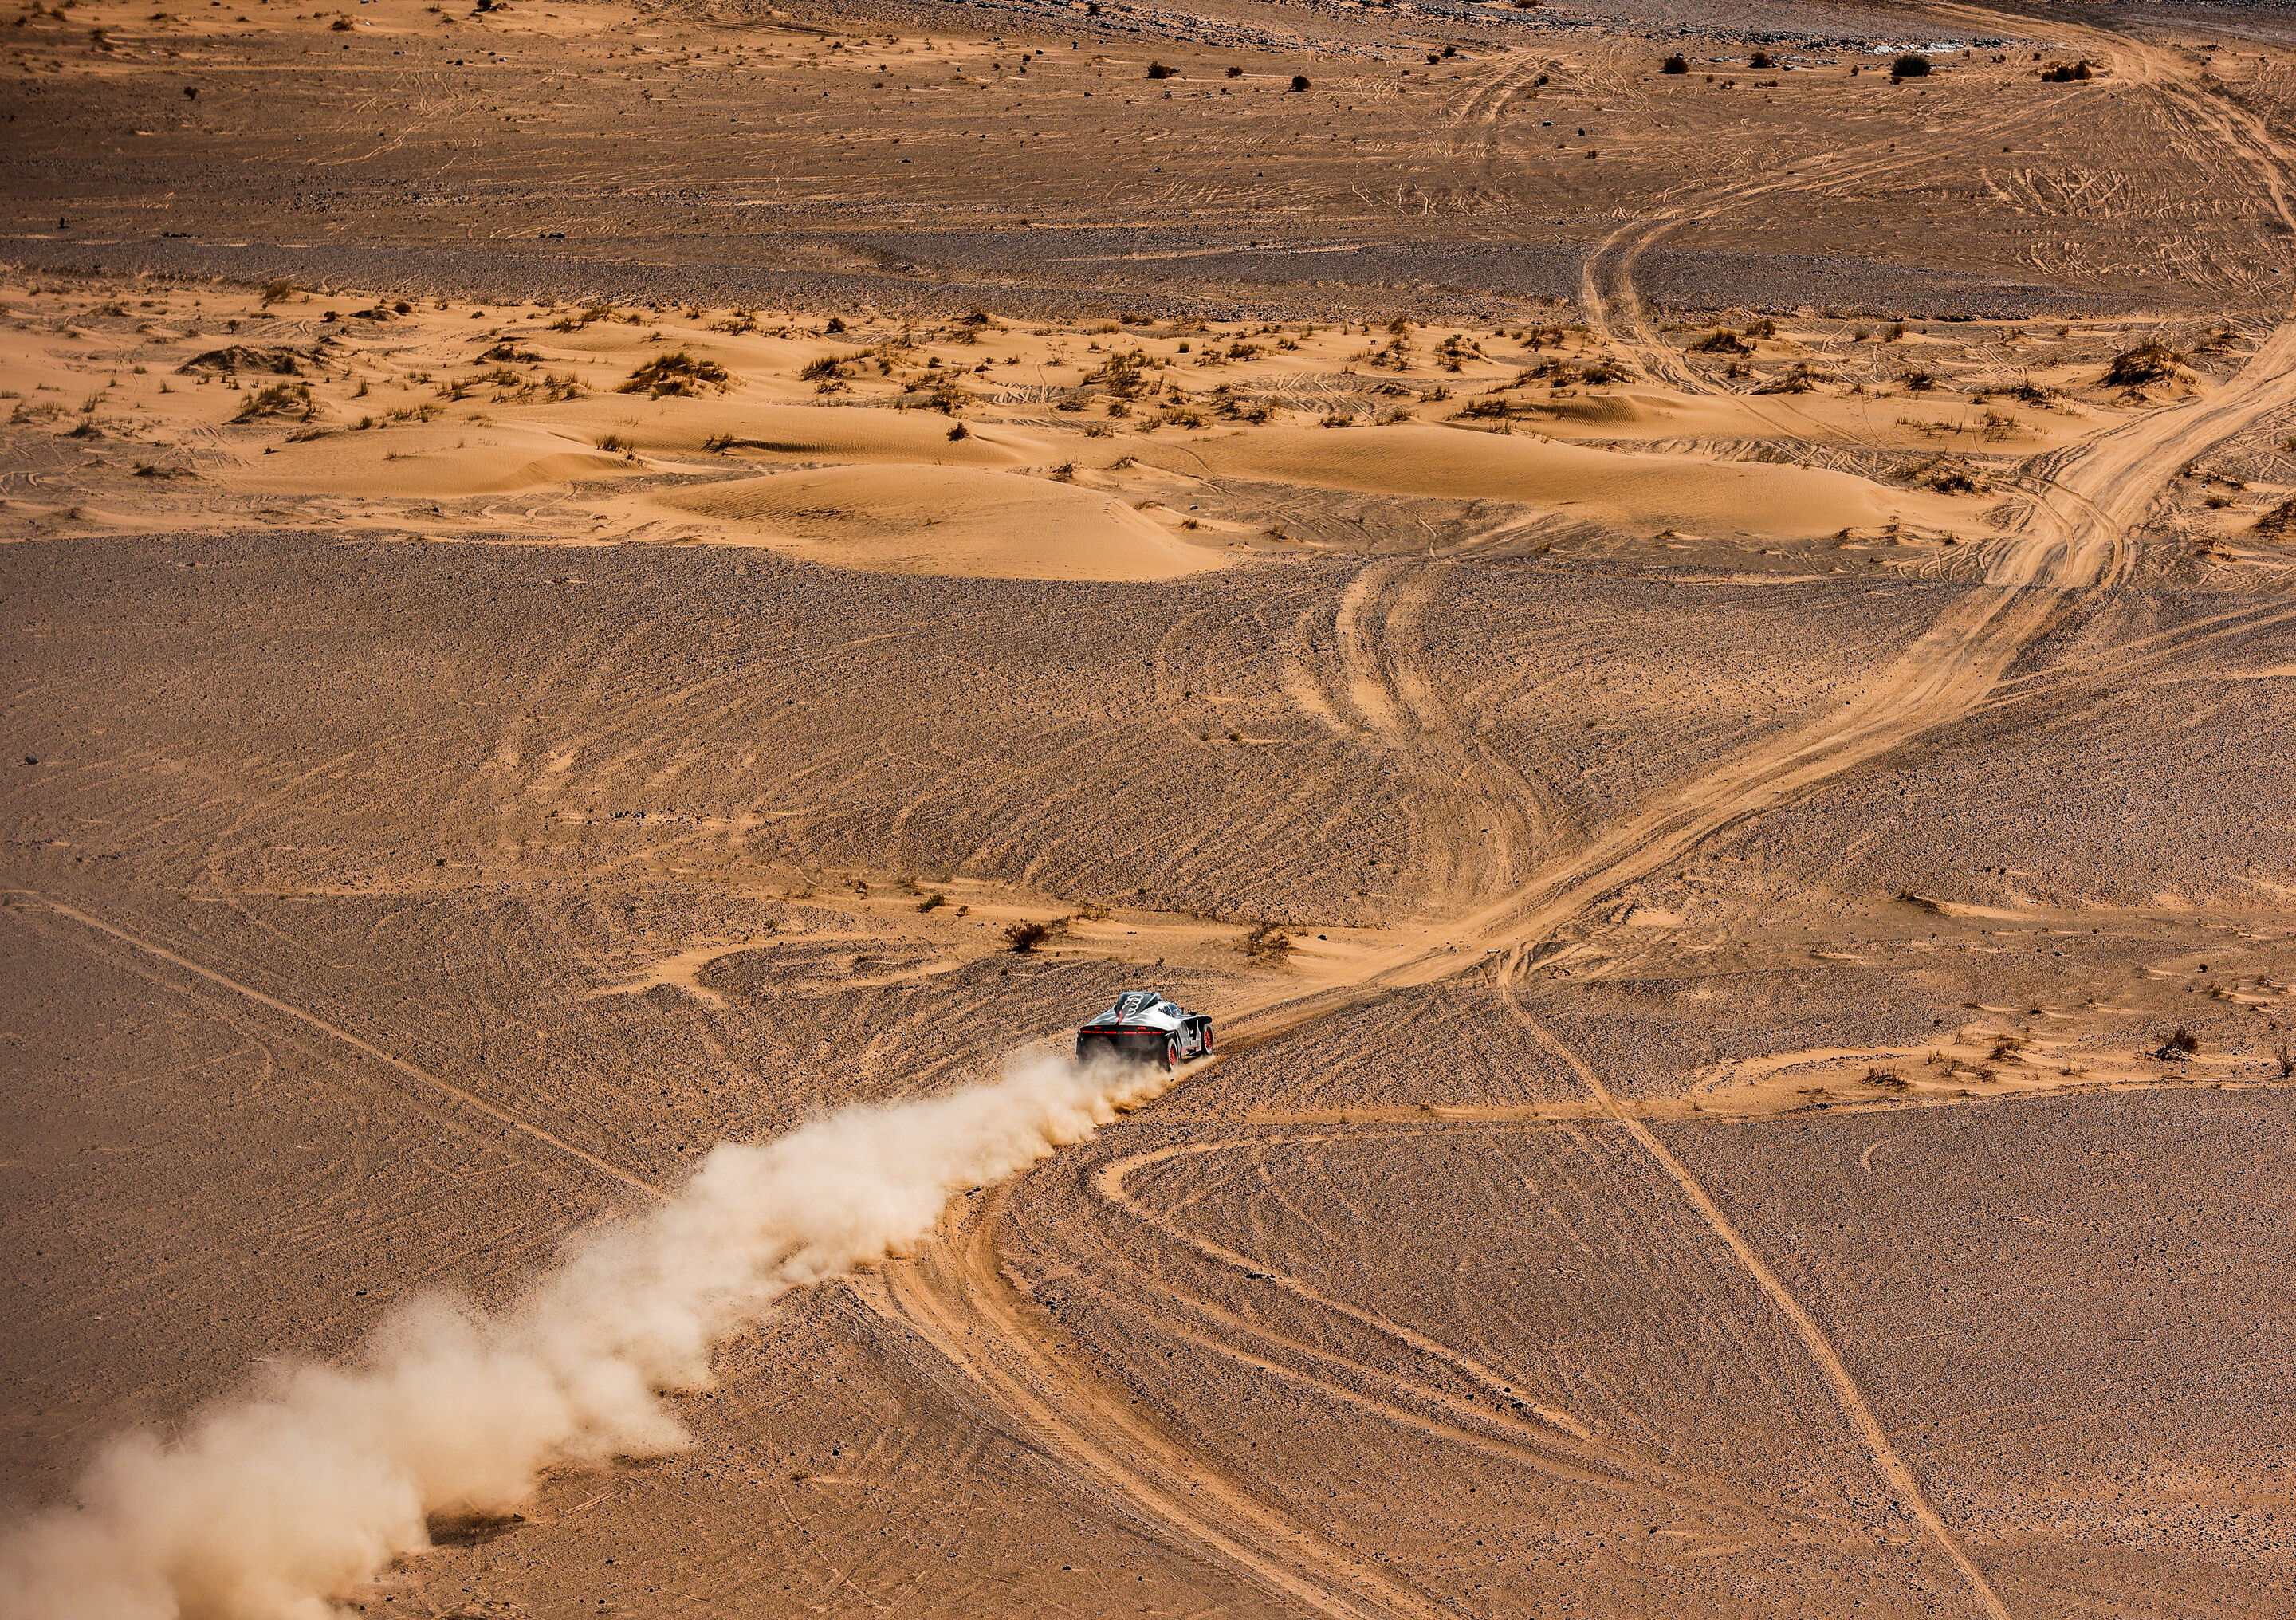 Dakar test Morocco, November 2021